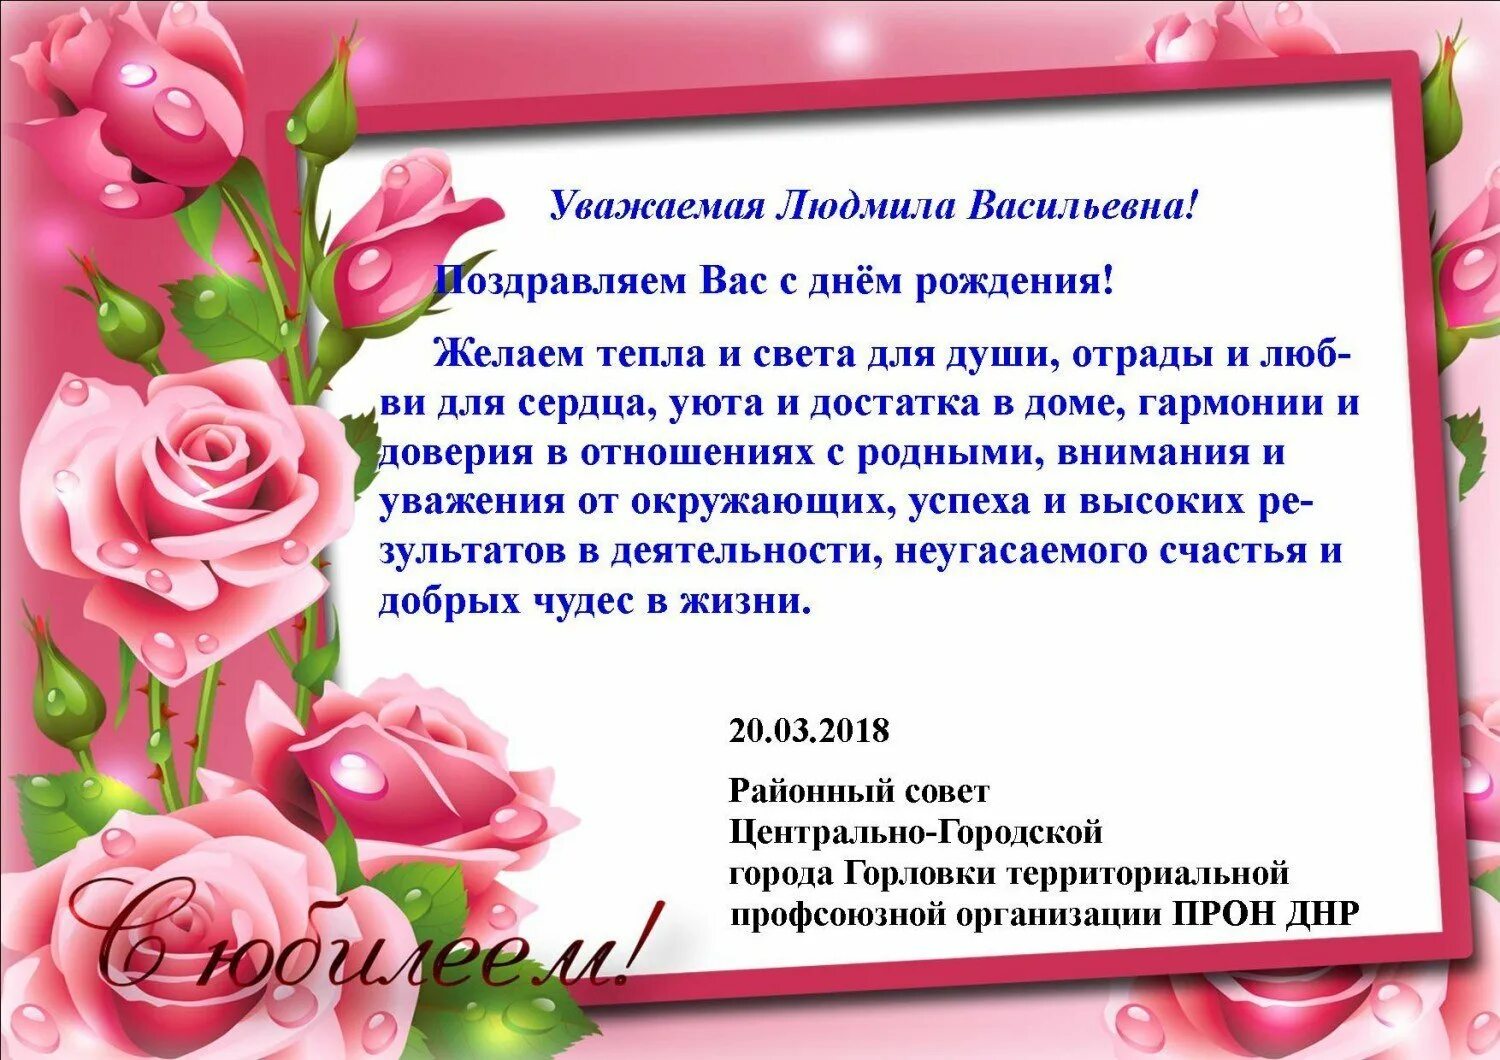 Поздравление с днём рождения Людмиле Васильевне.